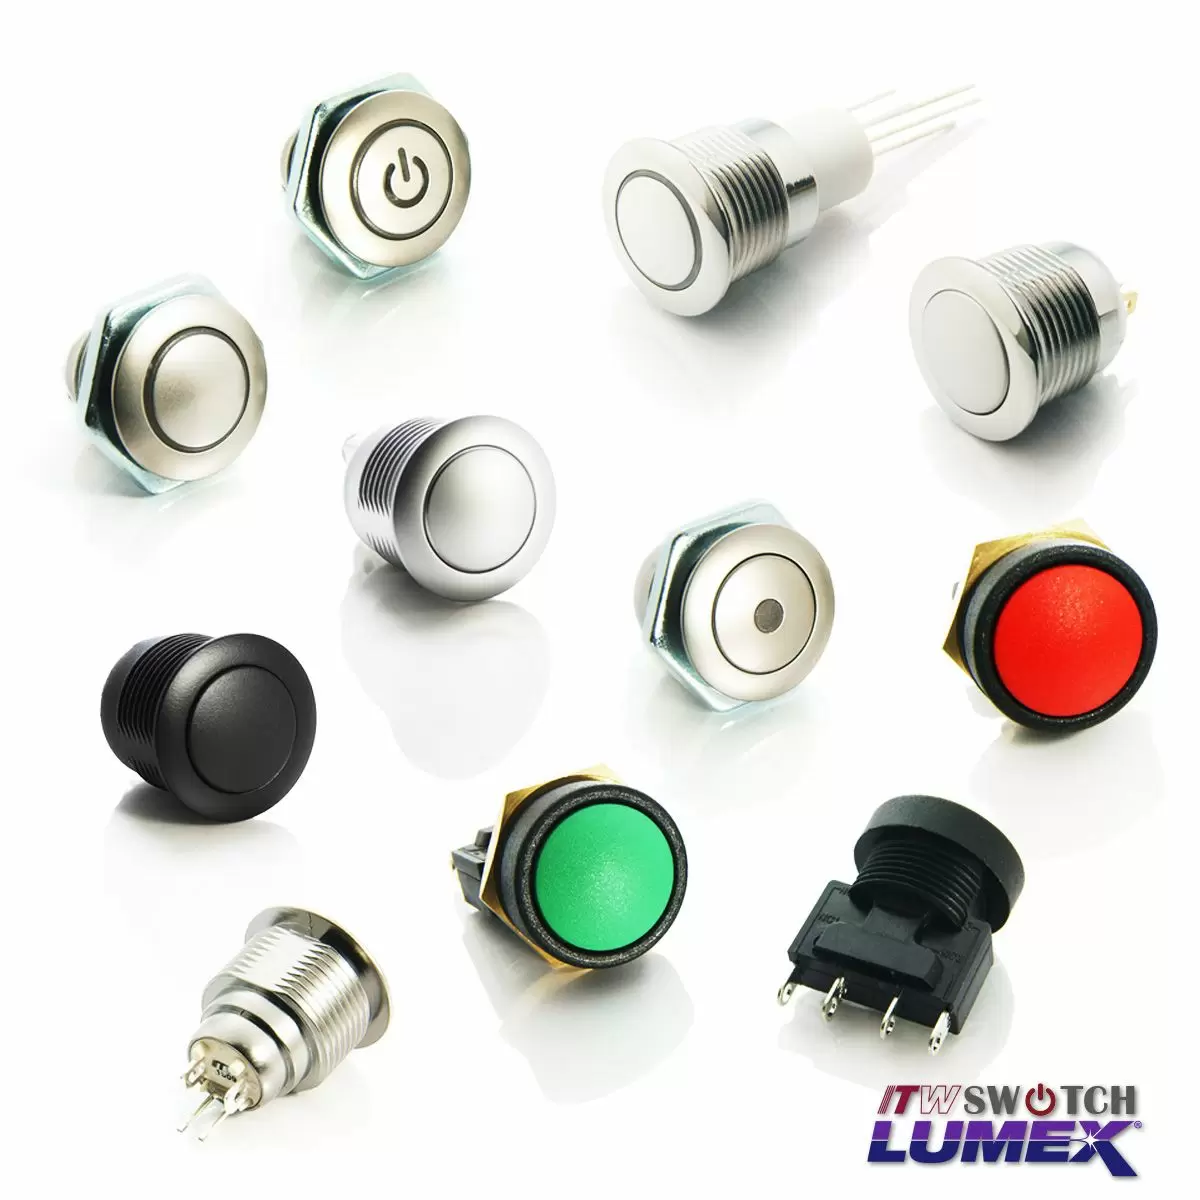 Le bouton-poussoir passe deITW Lumex Switchsont disponibles dans une gamme de modèles, tous compatibles avec une découpe de panneau de 16 mm.